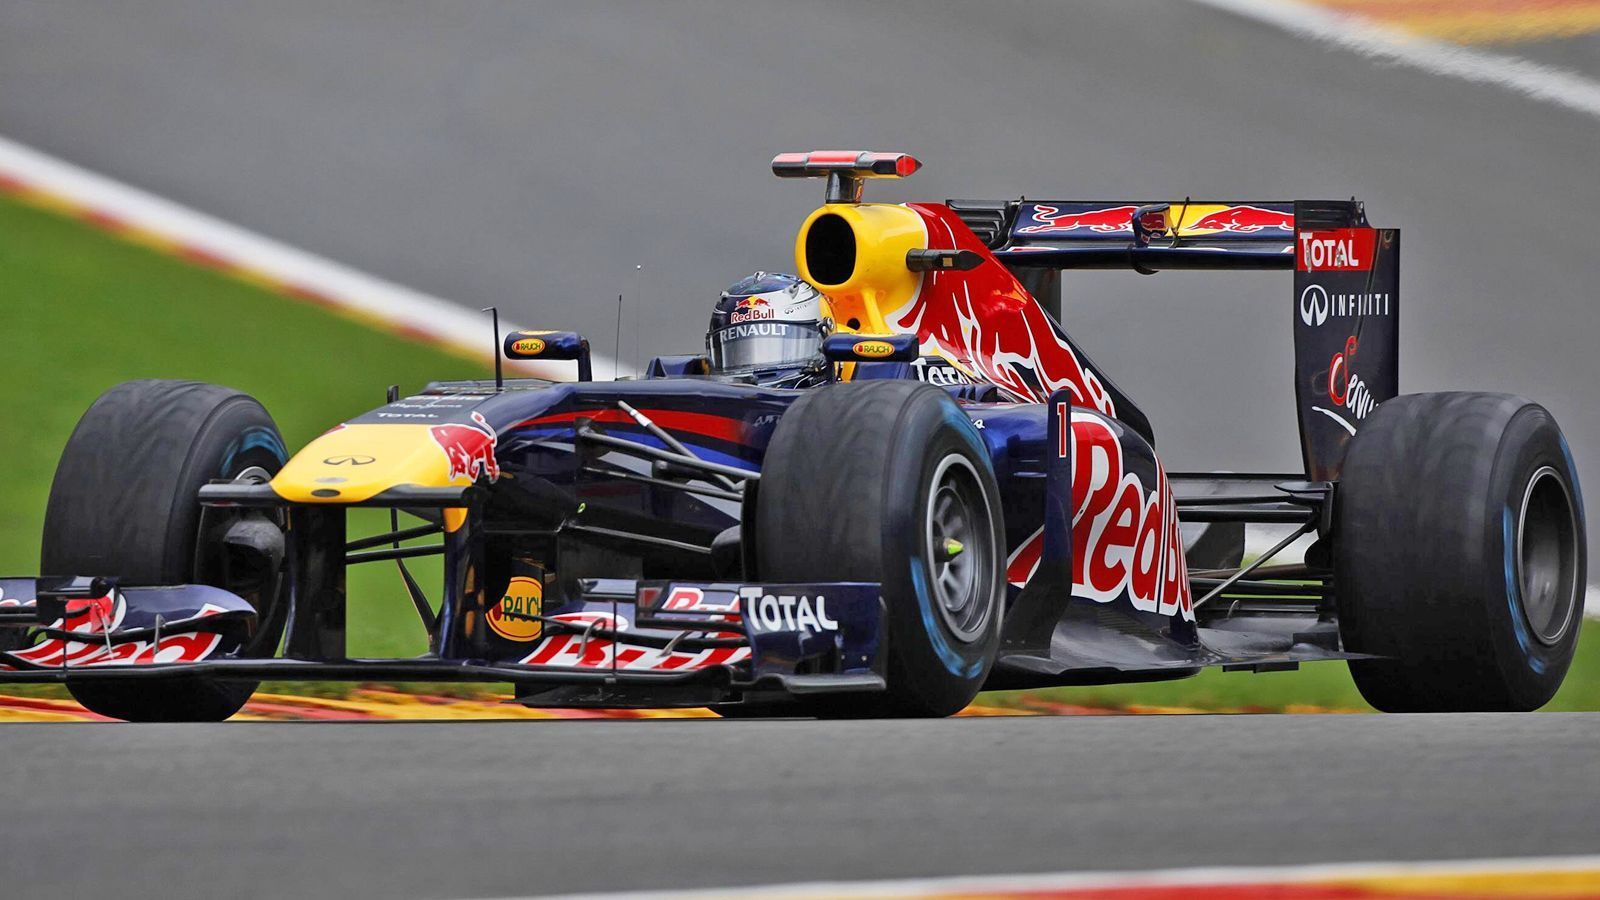 
                <strong>Red Bull RB7 (2011)</strong><br>
                Motor: Renault 2.4 V8Siege: 12Punkte: 650WM-Rang: 1Fahrer: Mark Webber & Sebastian Vettel
              